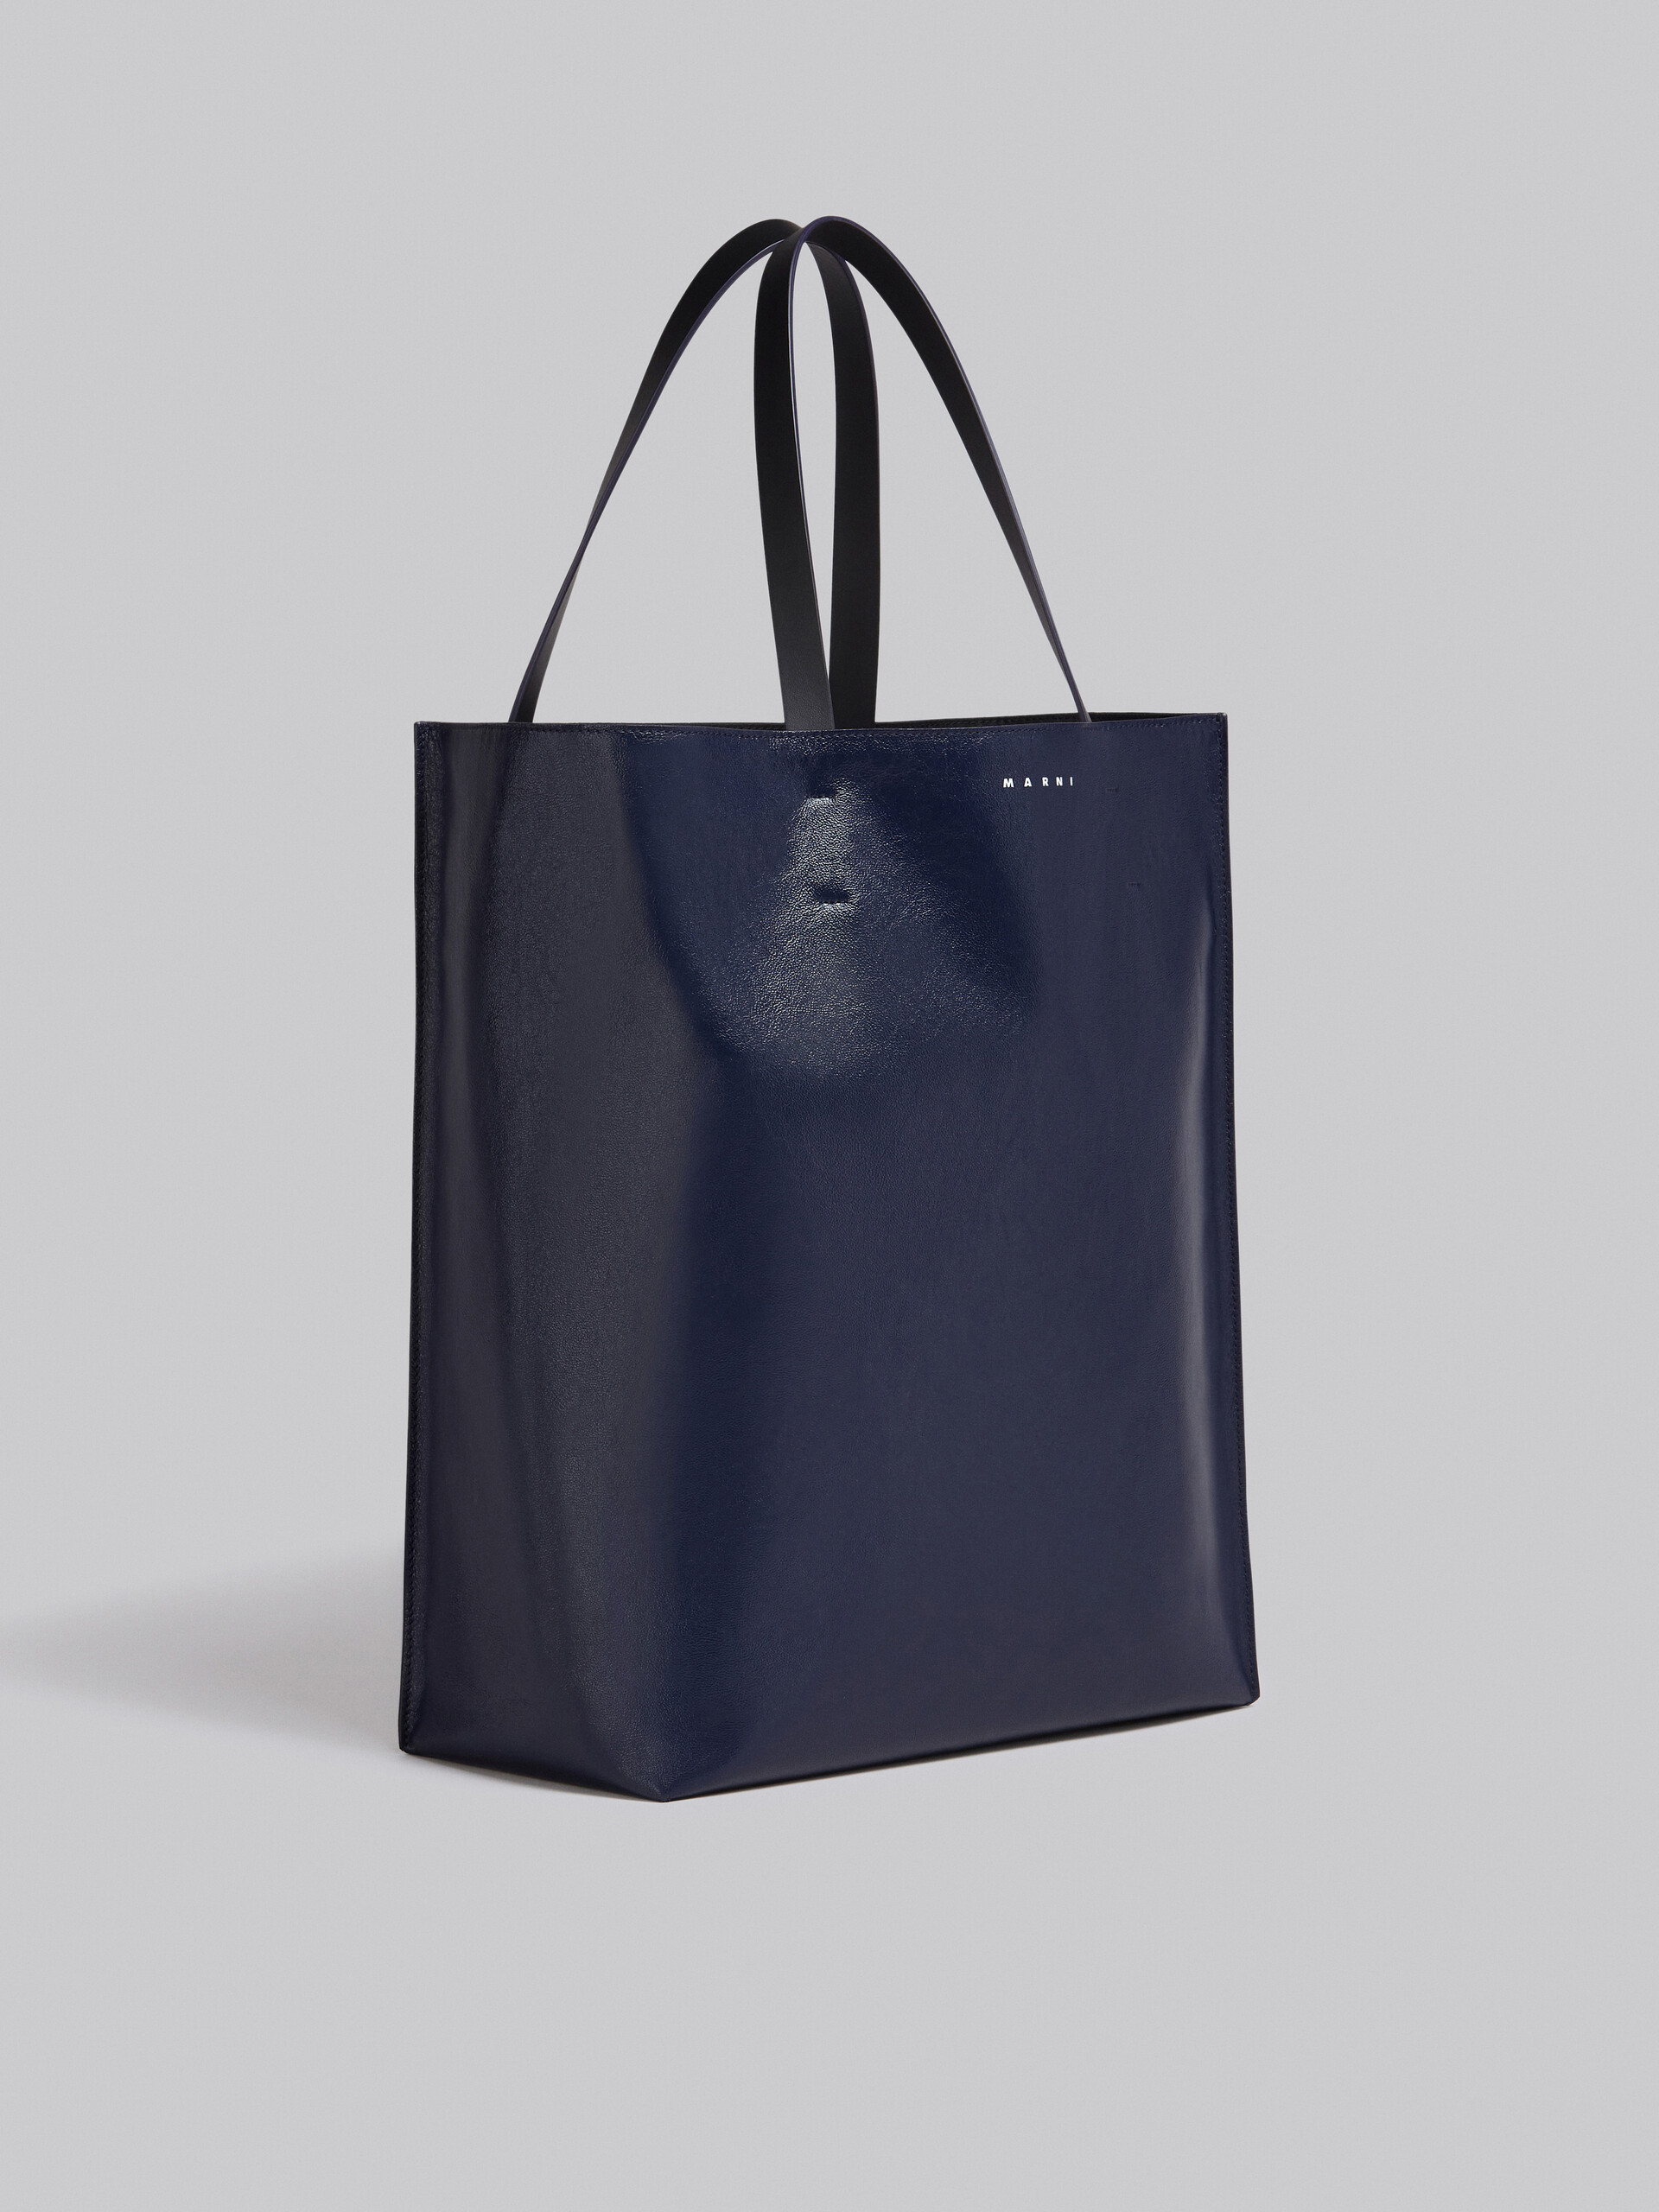 Große Tasche Museo Soft aus Leder in Schwarz und Blau - Shopper - Image 6